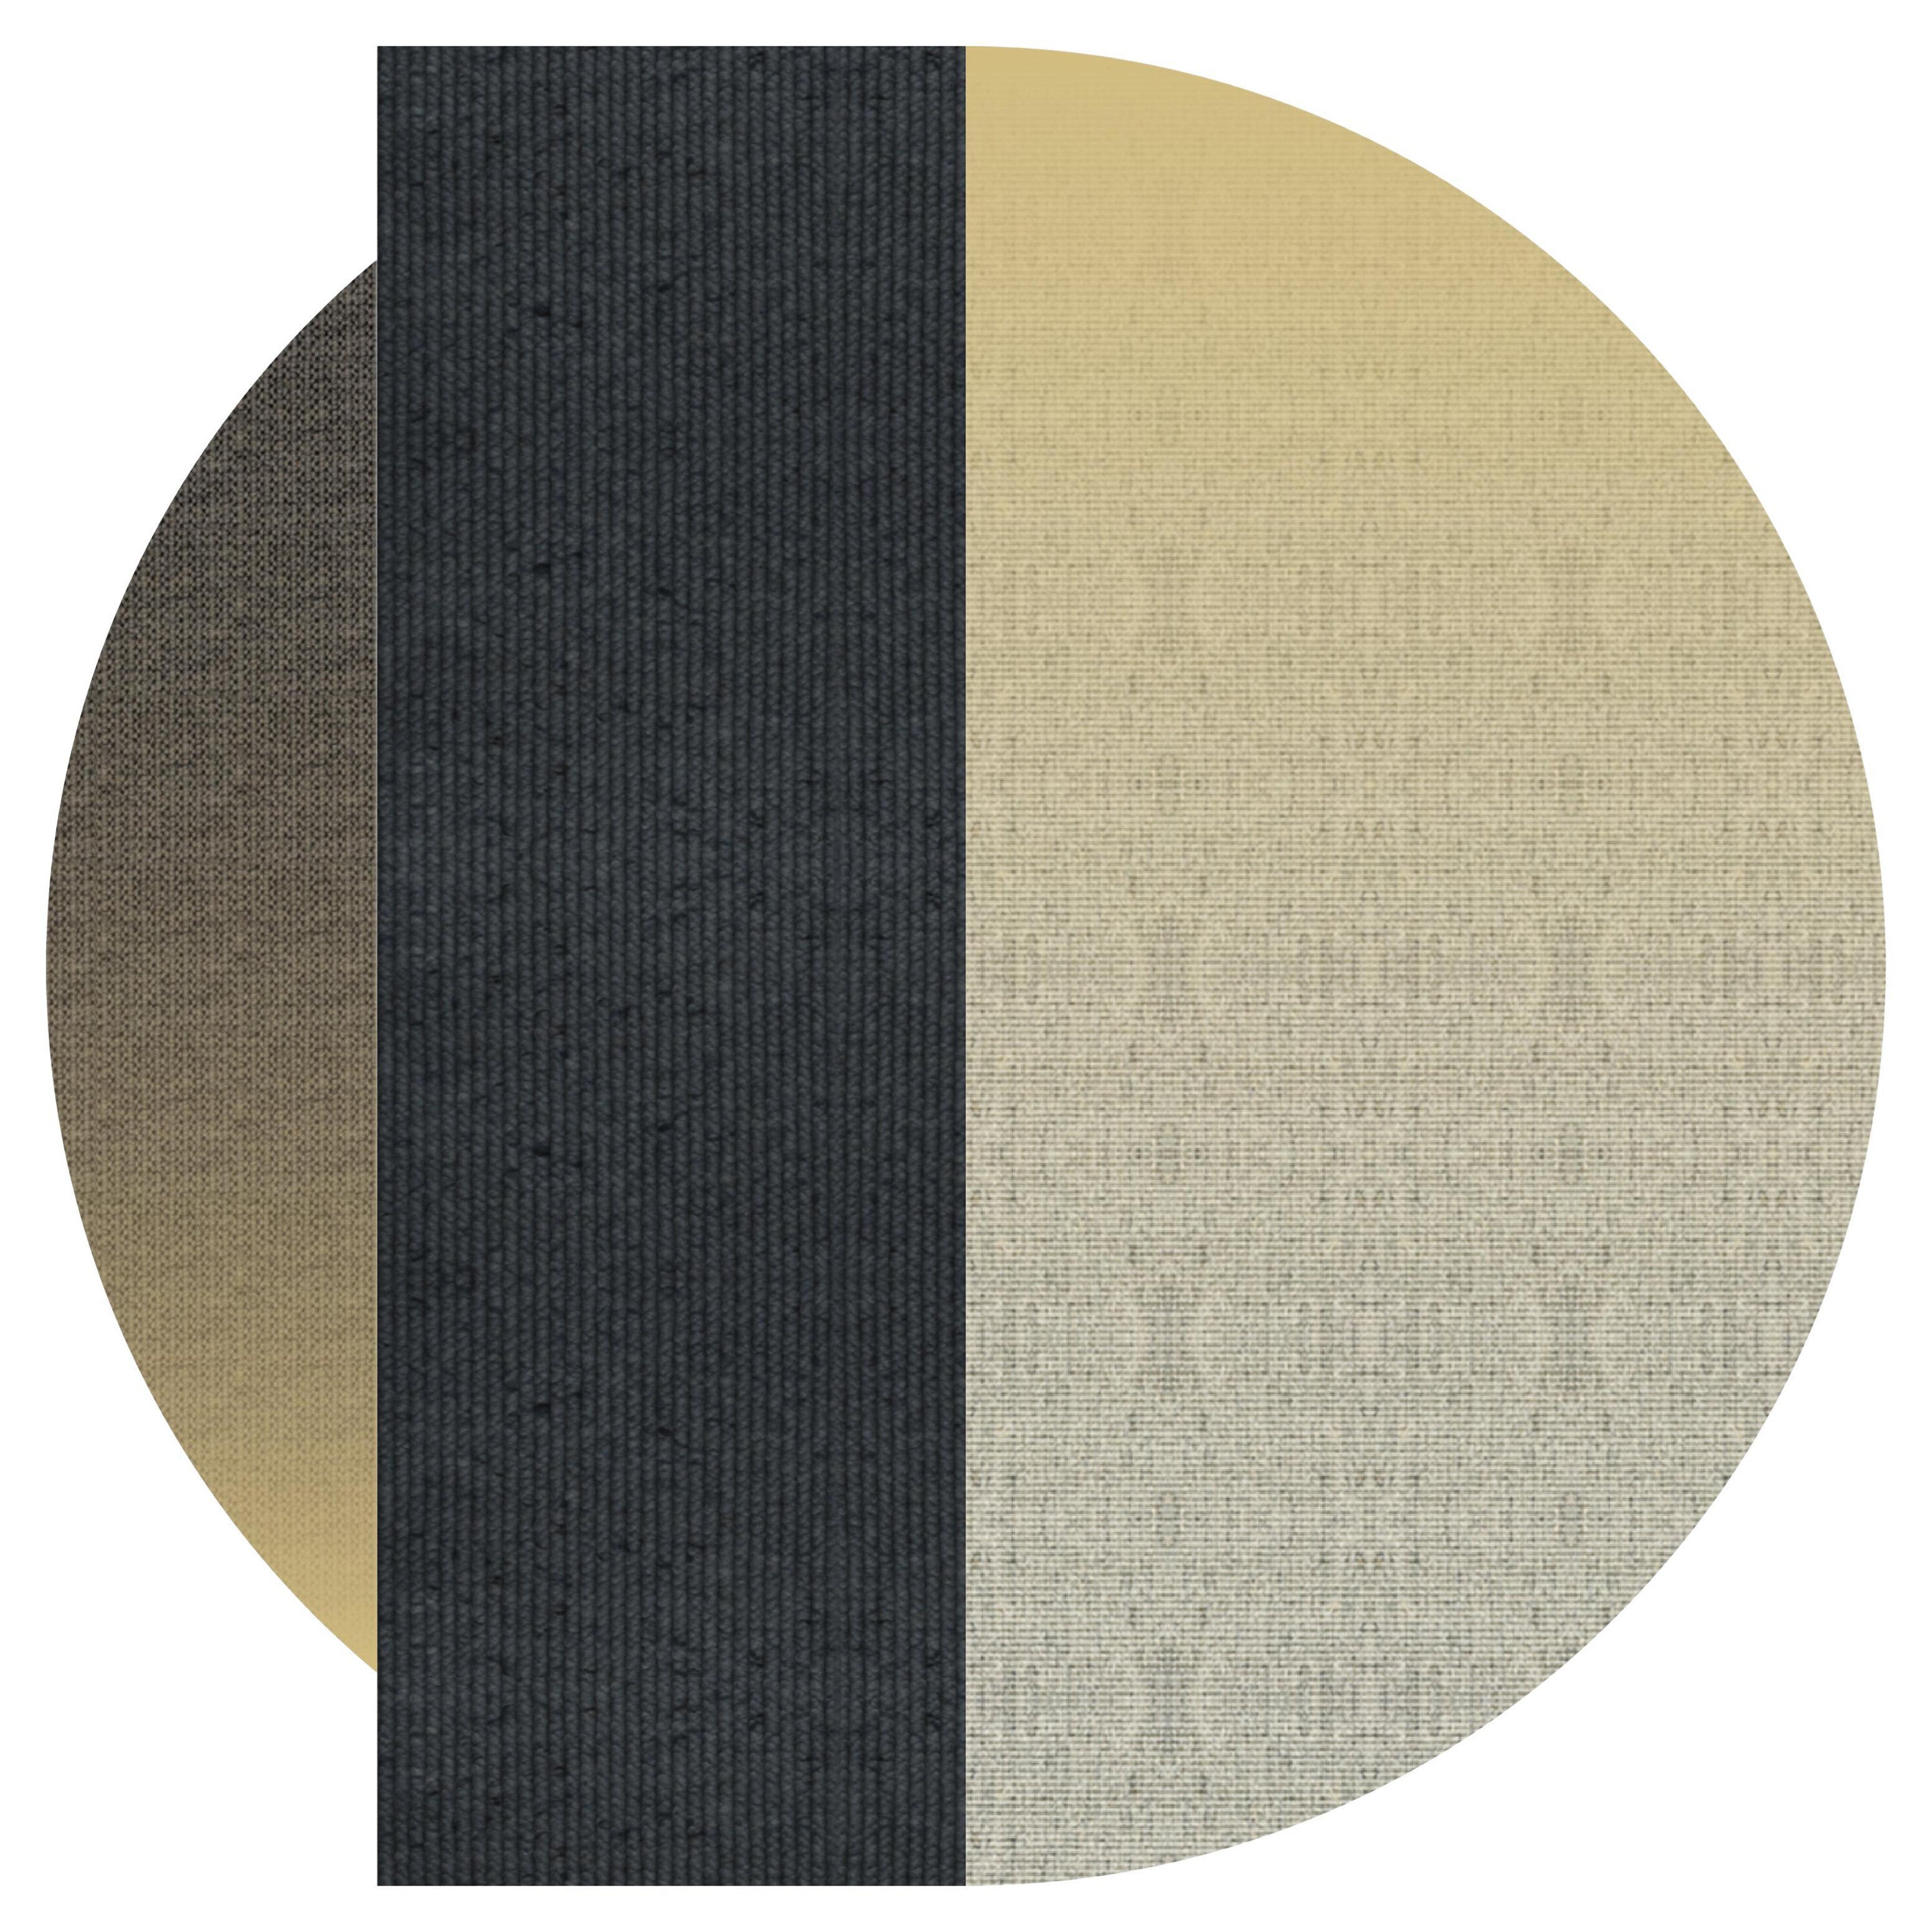 Teppich 'Flux' aus Abaca, Farbe 'Pampas', Ø 250cm von Claire Vos für Musett Design im Angebot